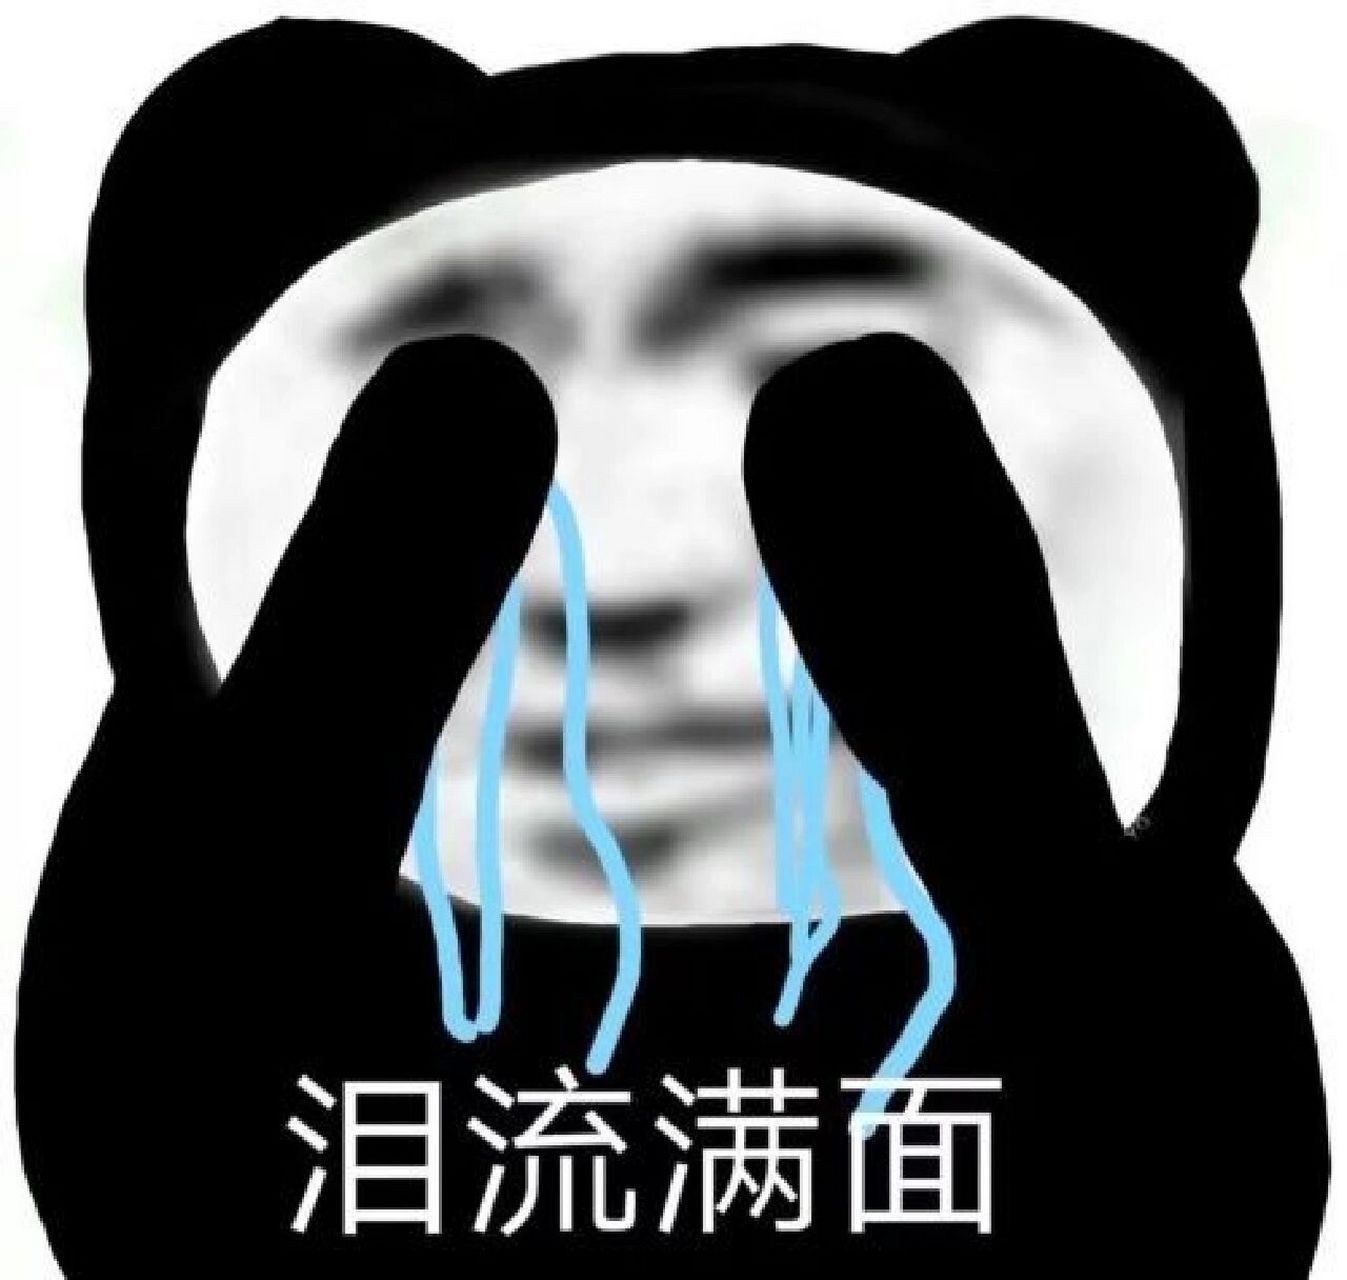 熊猫头哭泣表情包合集 熊猫头花式哭,哭出你滴委屈